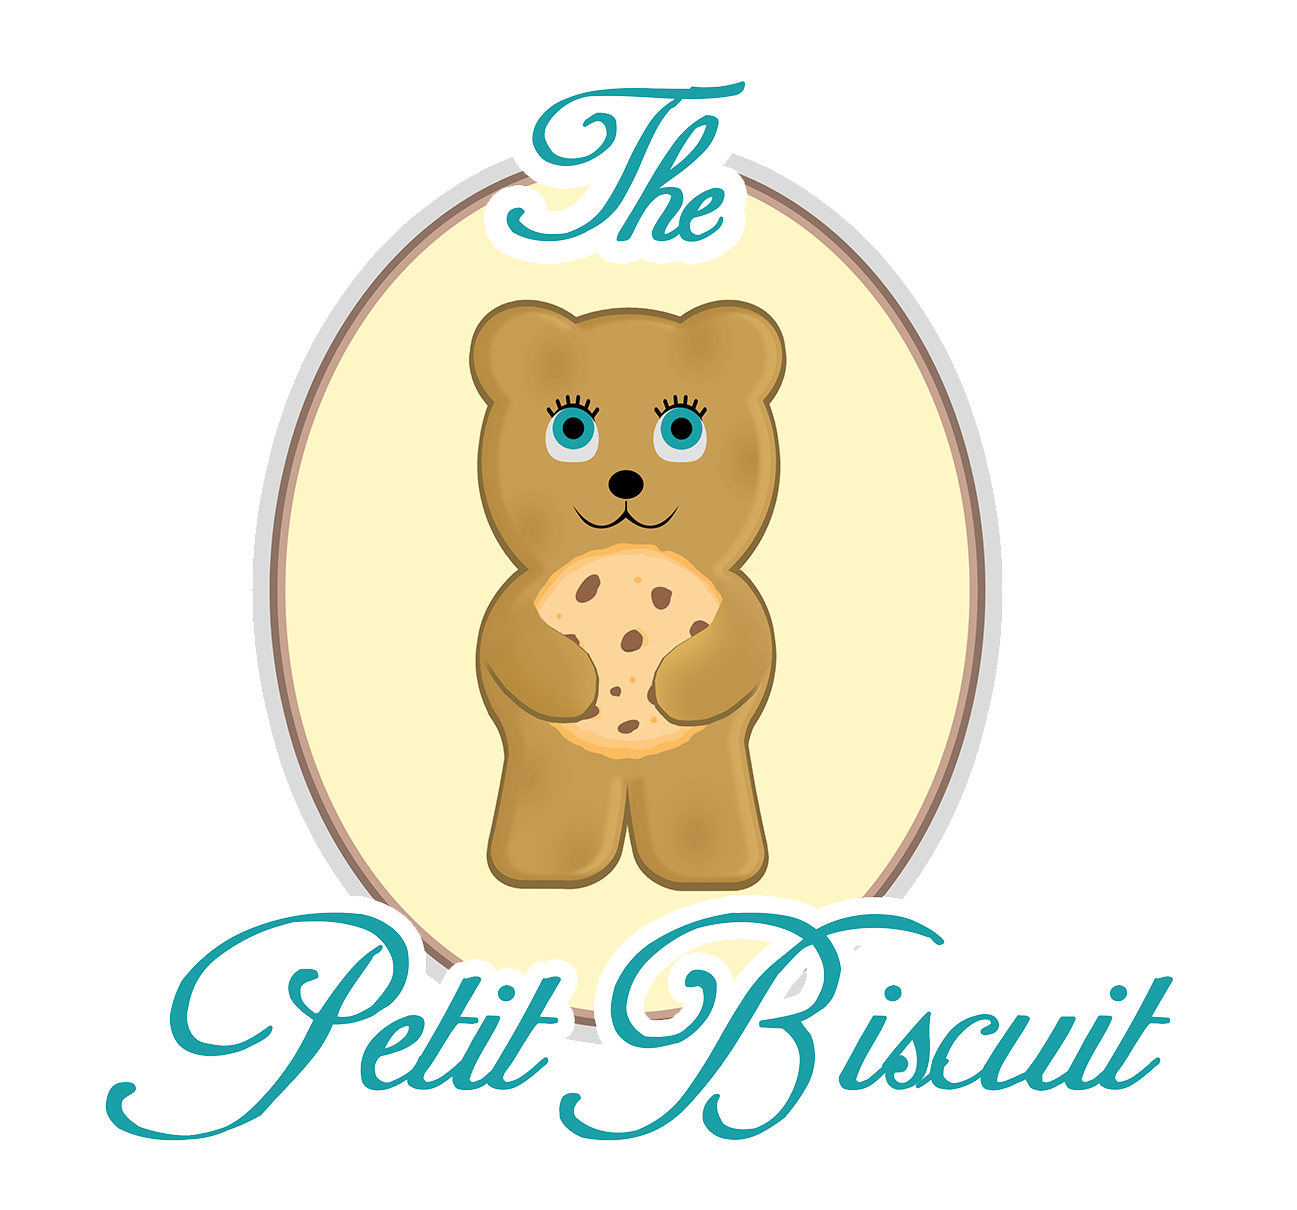 The Petit Biscuit